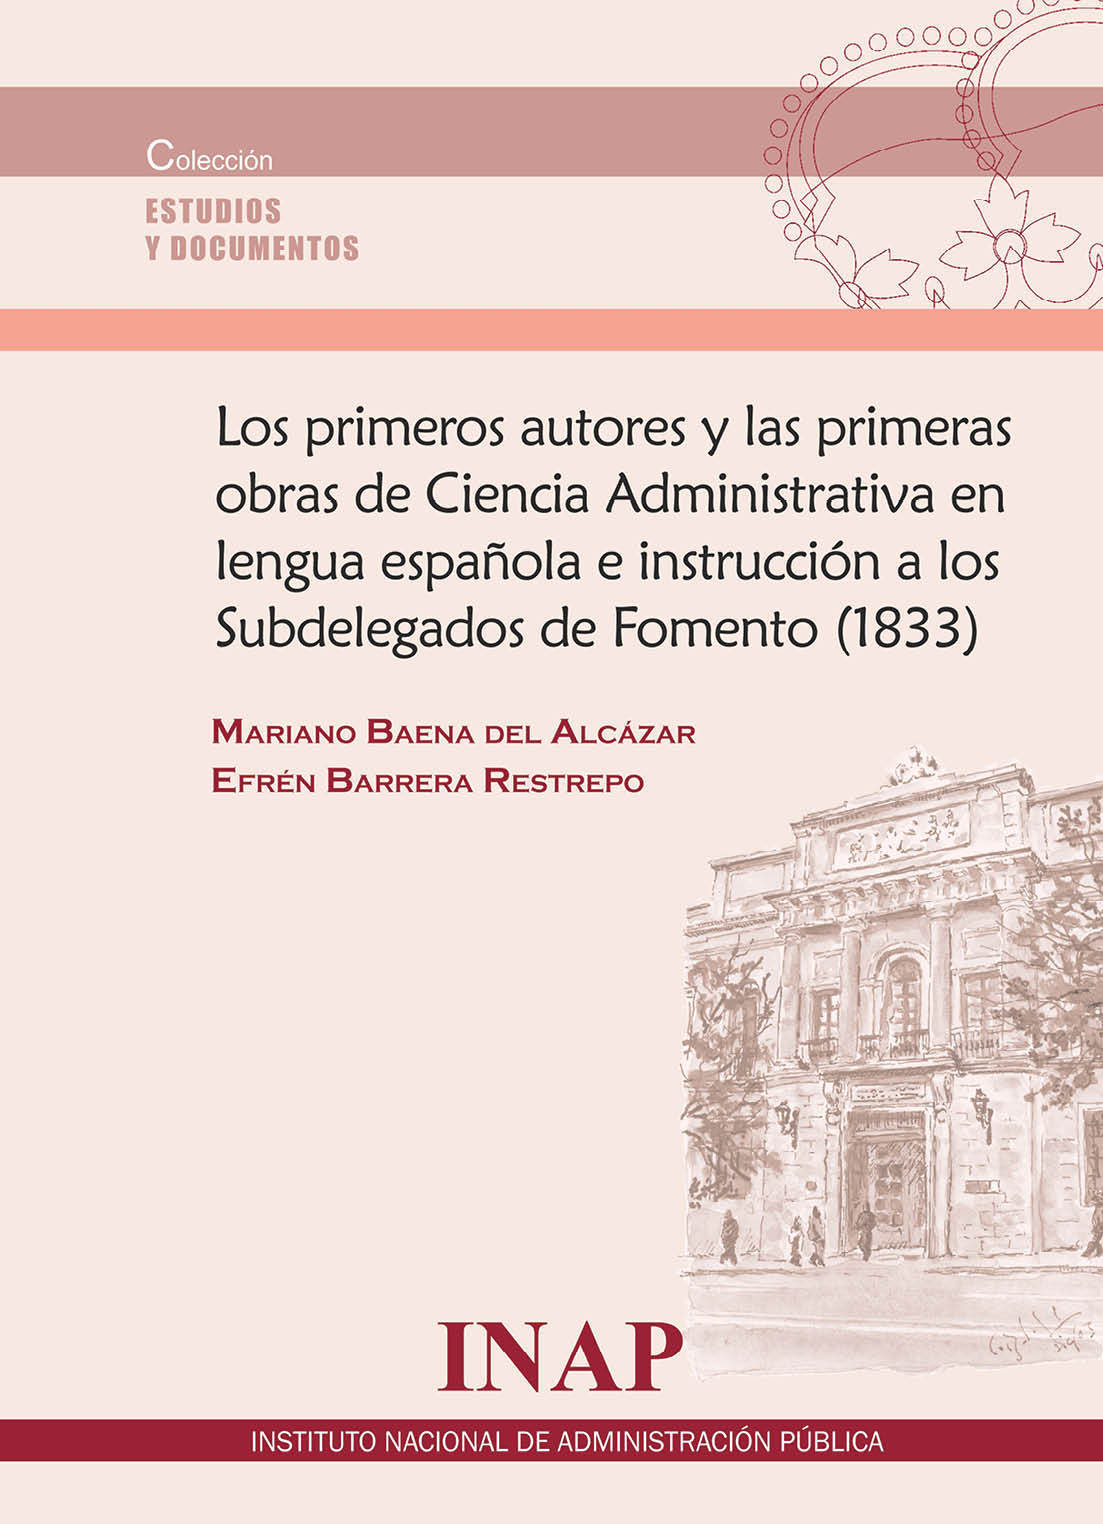 Los primeros autores y las primeras obras de la Ciencia Administrativa en la lengua española e intrucción a los Subdelegados de Fomento (1833) 